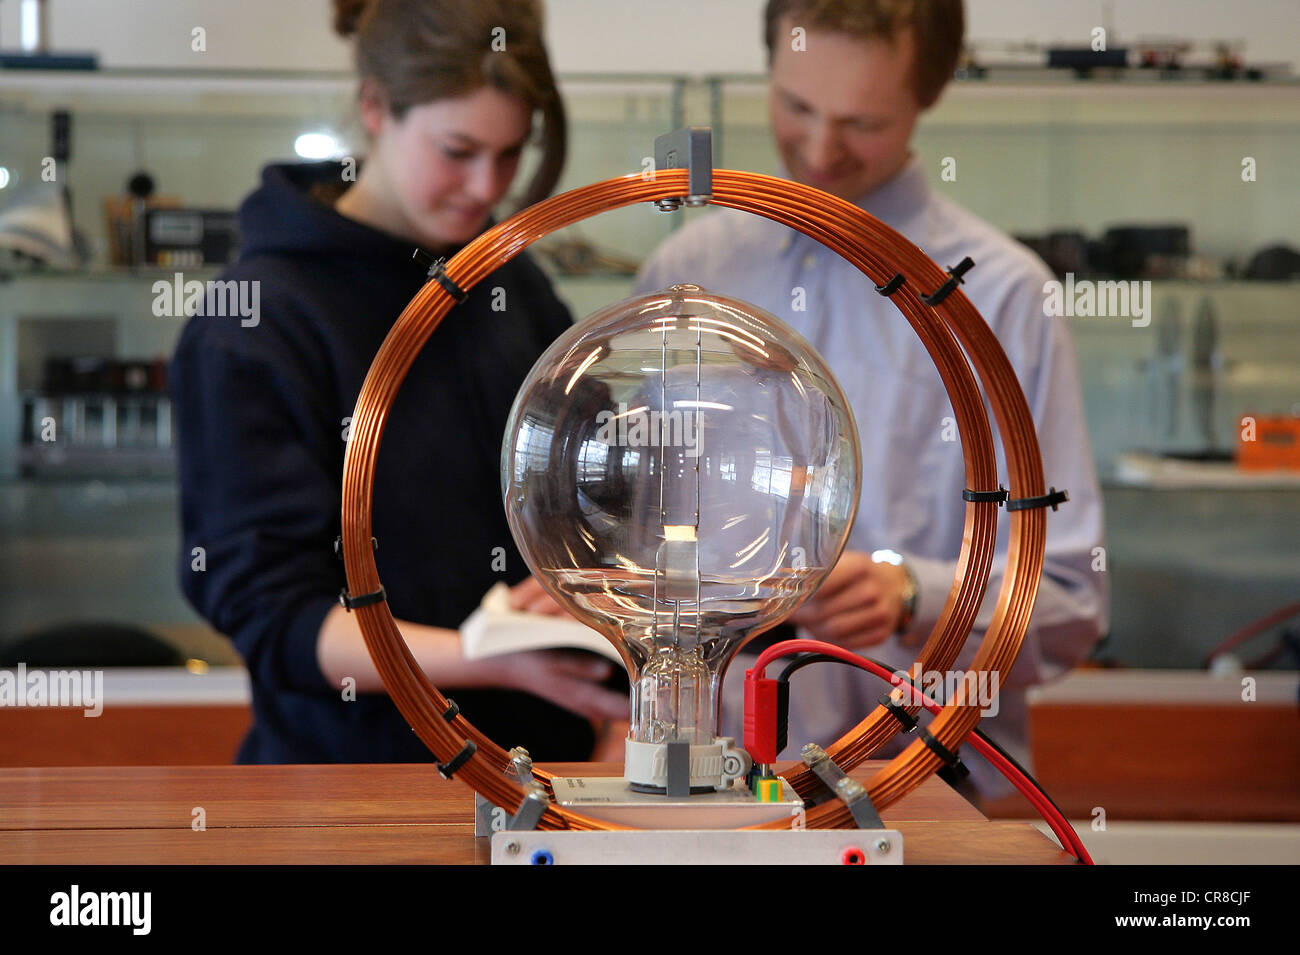 Chercheurs en physique faisant une expérience scientifique en laboratoire Banque D'Images